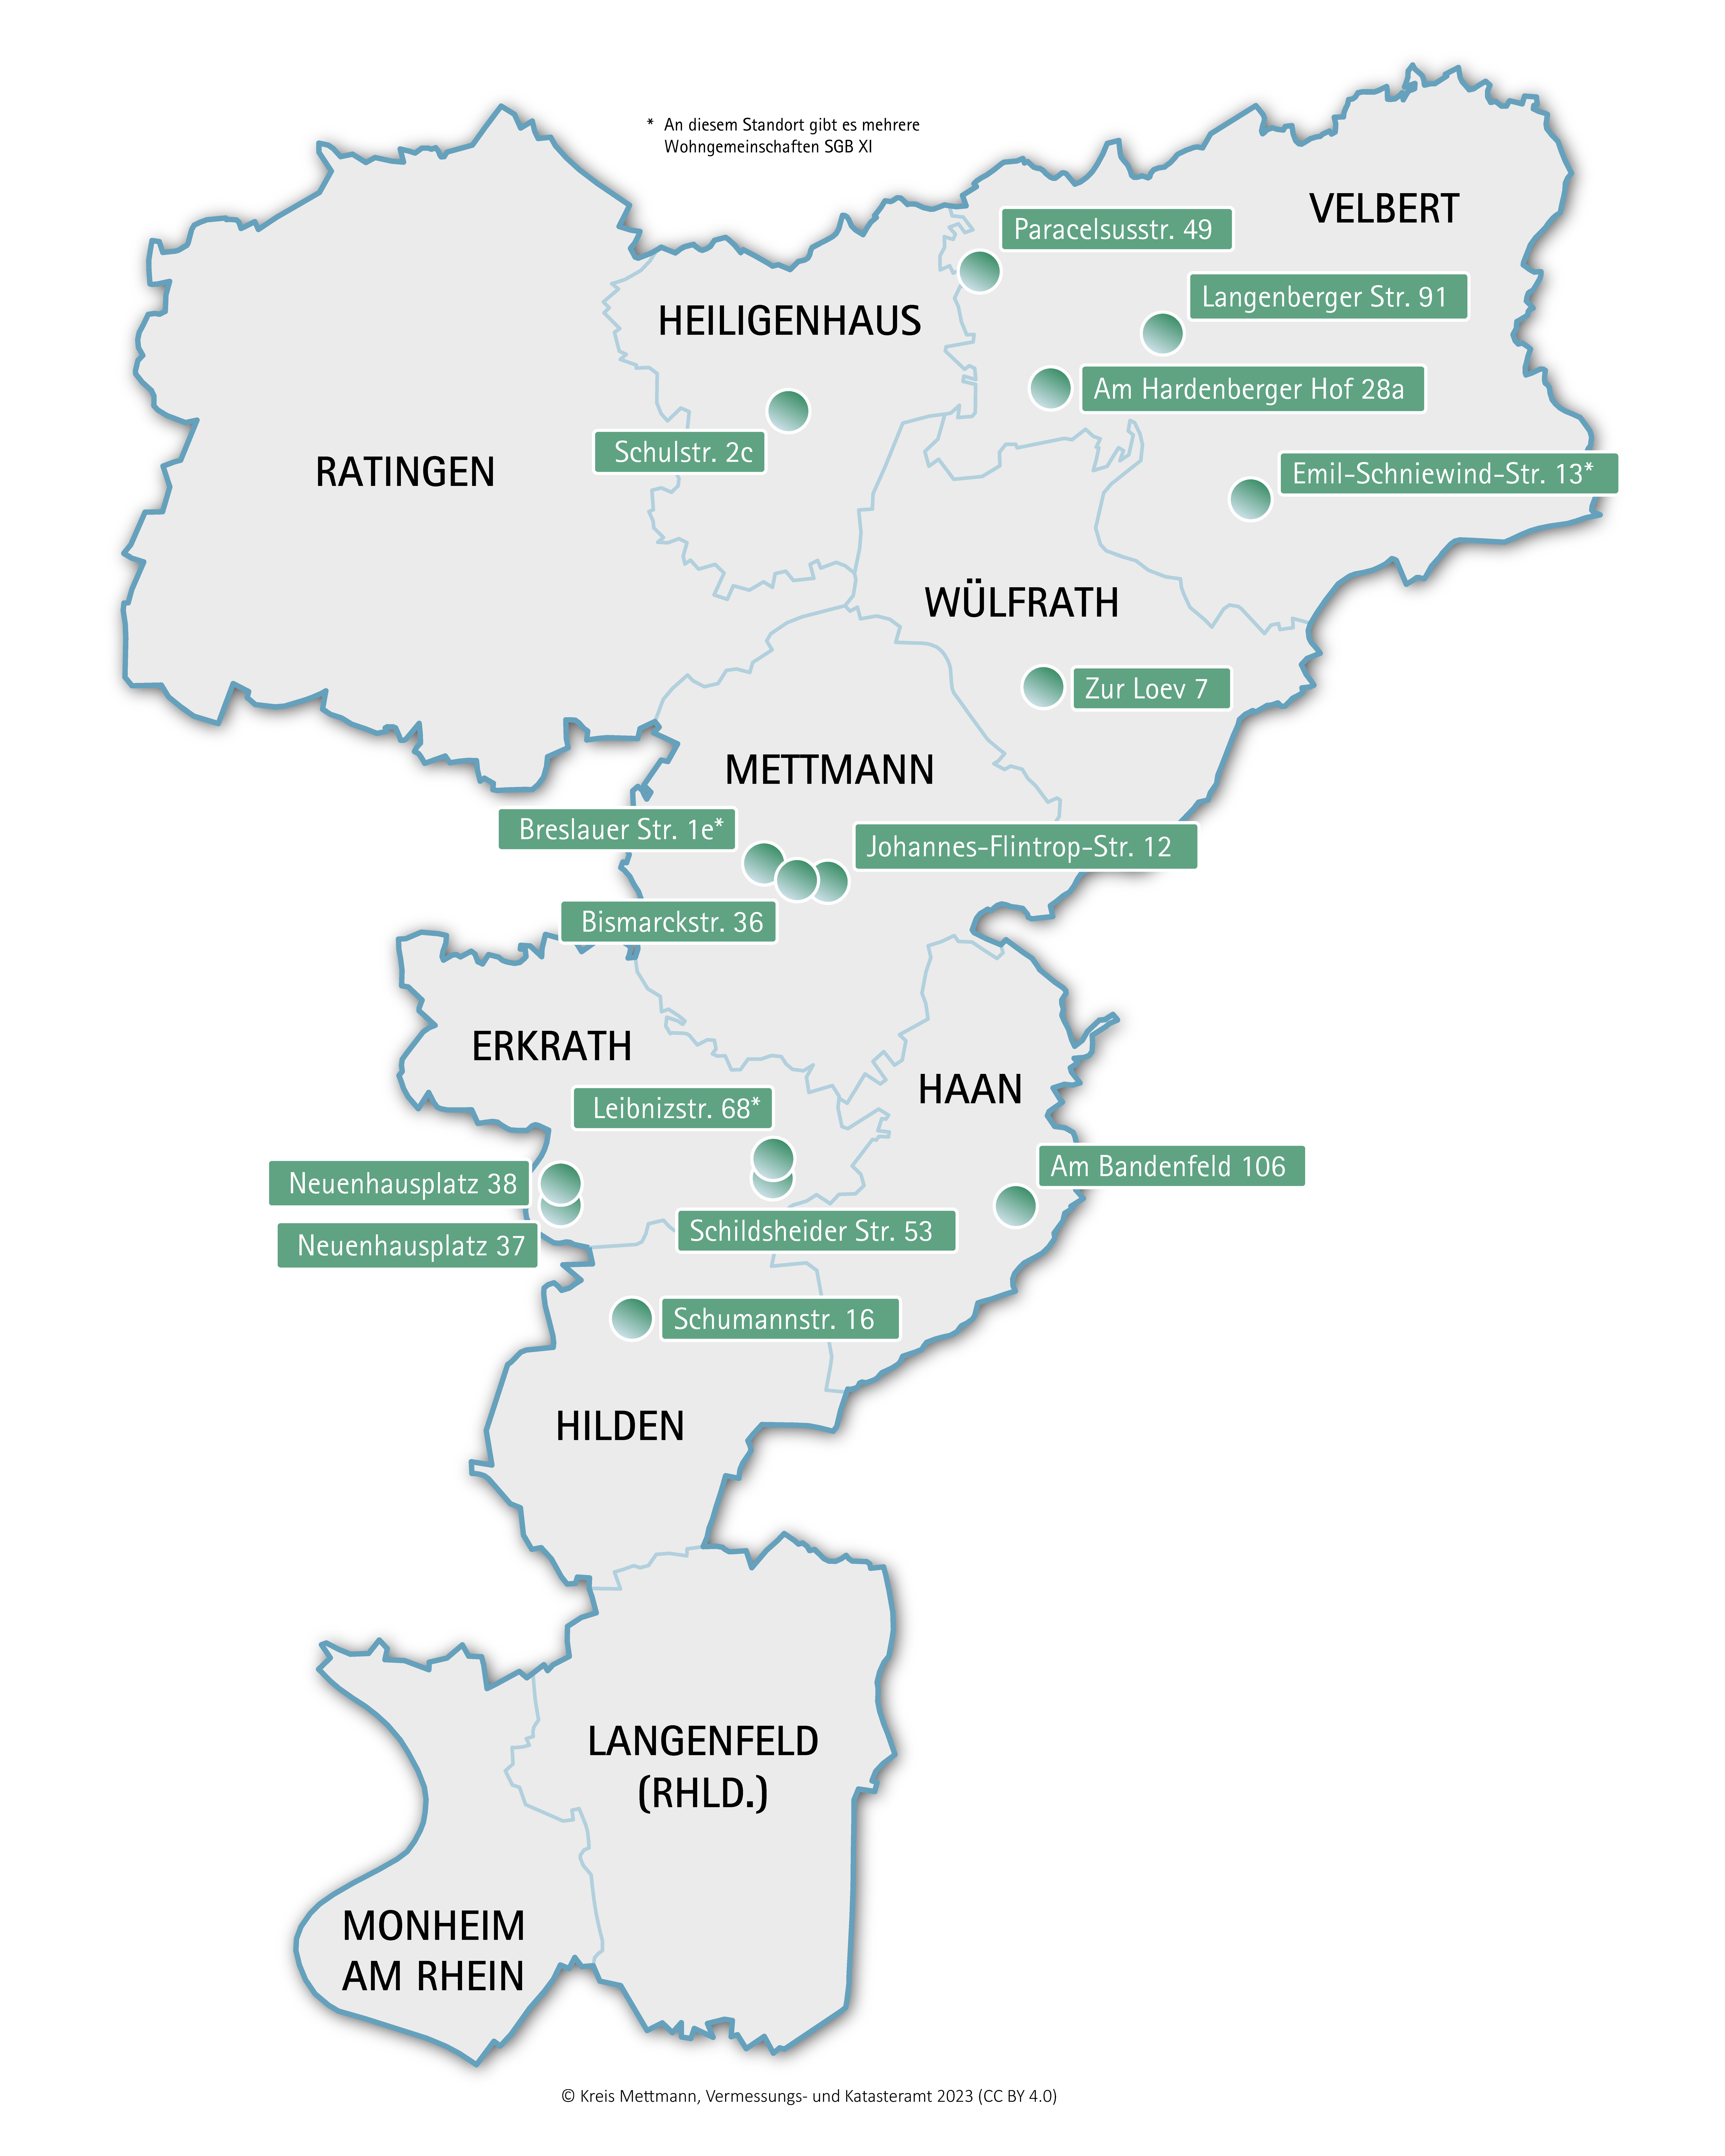 Bild vergrößern: Übersichtskarte der Pflegewohngemeinschaften im Kreis Mettmann. Die Standorte werden durch einen Punkt markiert.